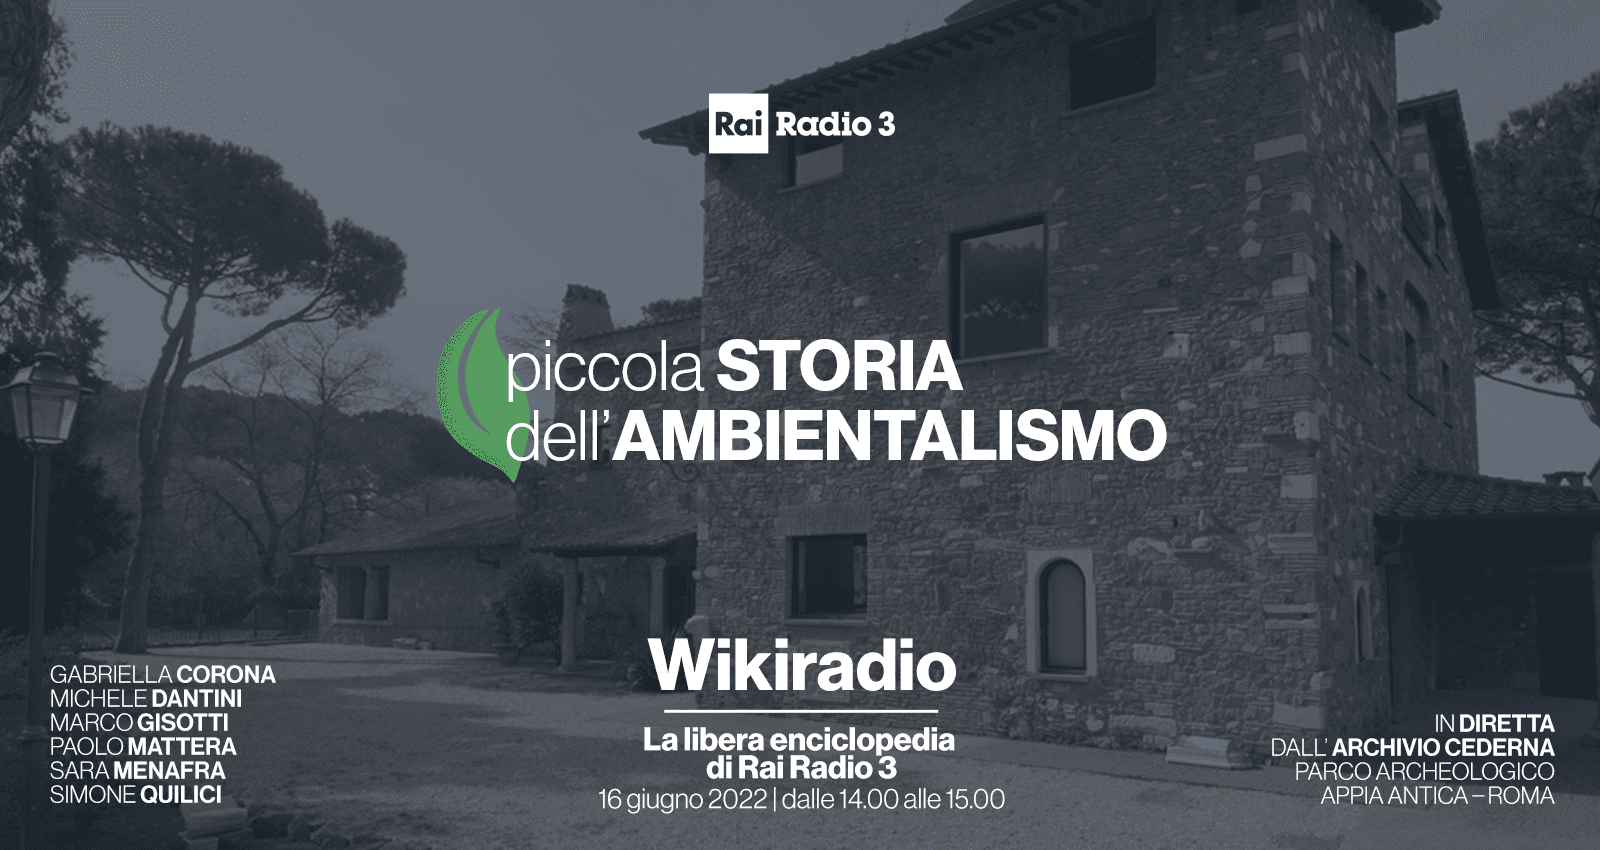 Giovedì 16 giugno dalle 14.00 alle 15.00 speciale ambiente Wikiradio Radio 3 dall’Archivio Antonio Cederna a Capo di Bove